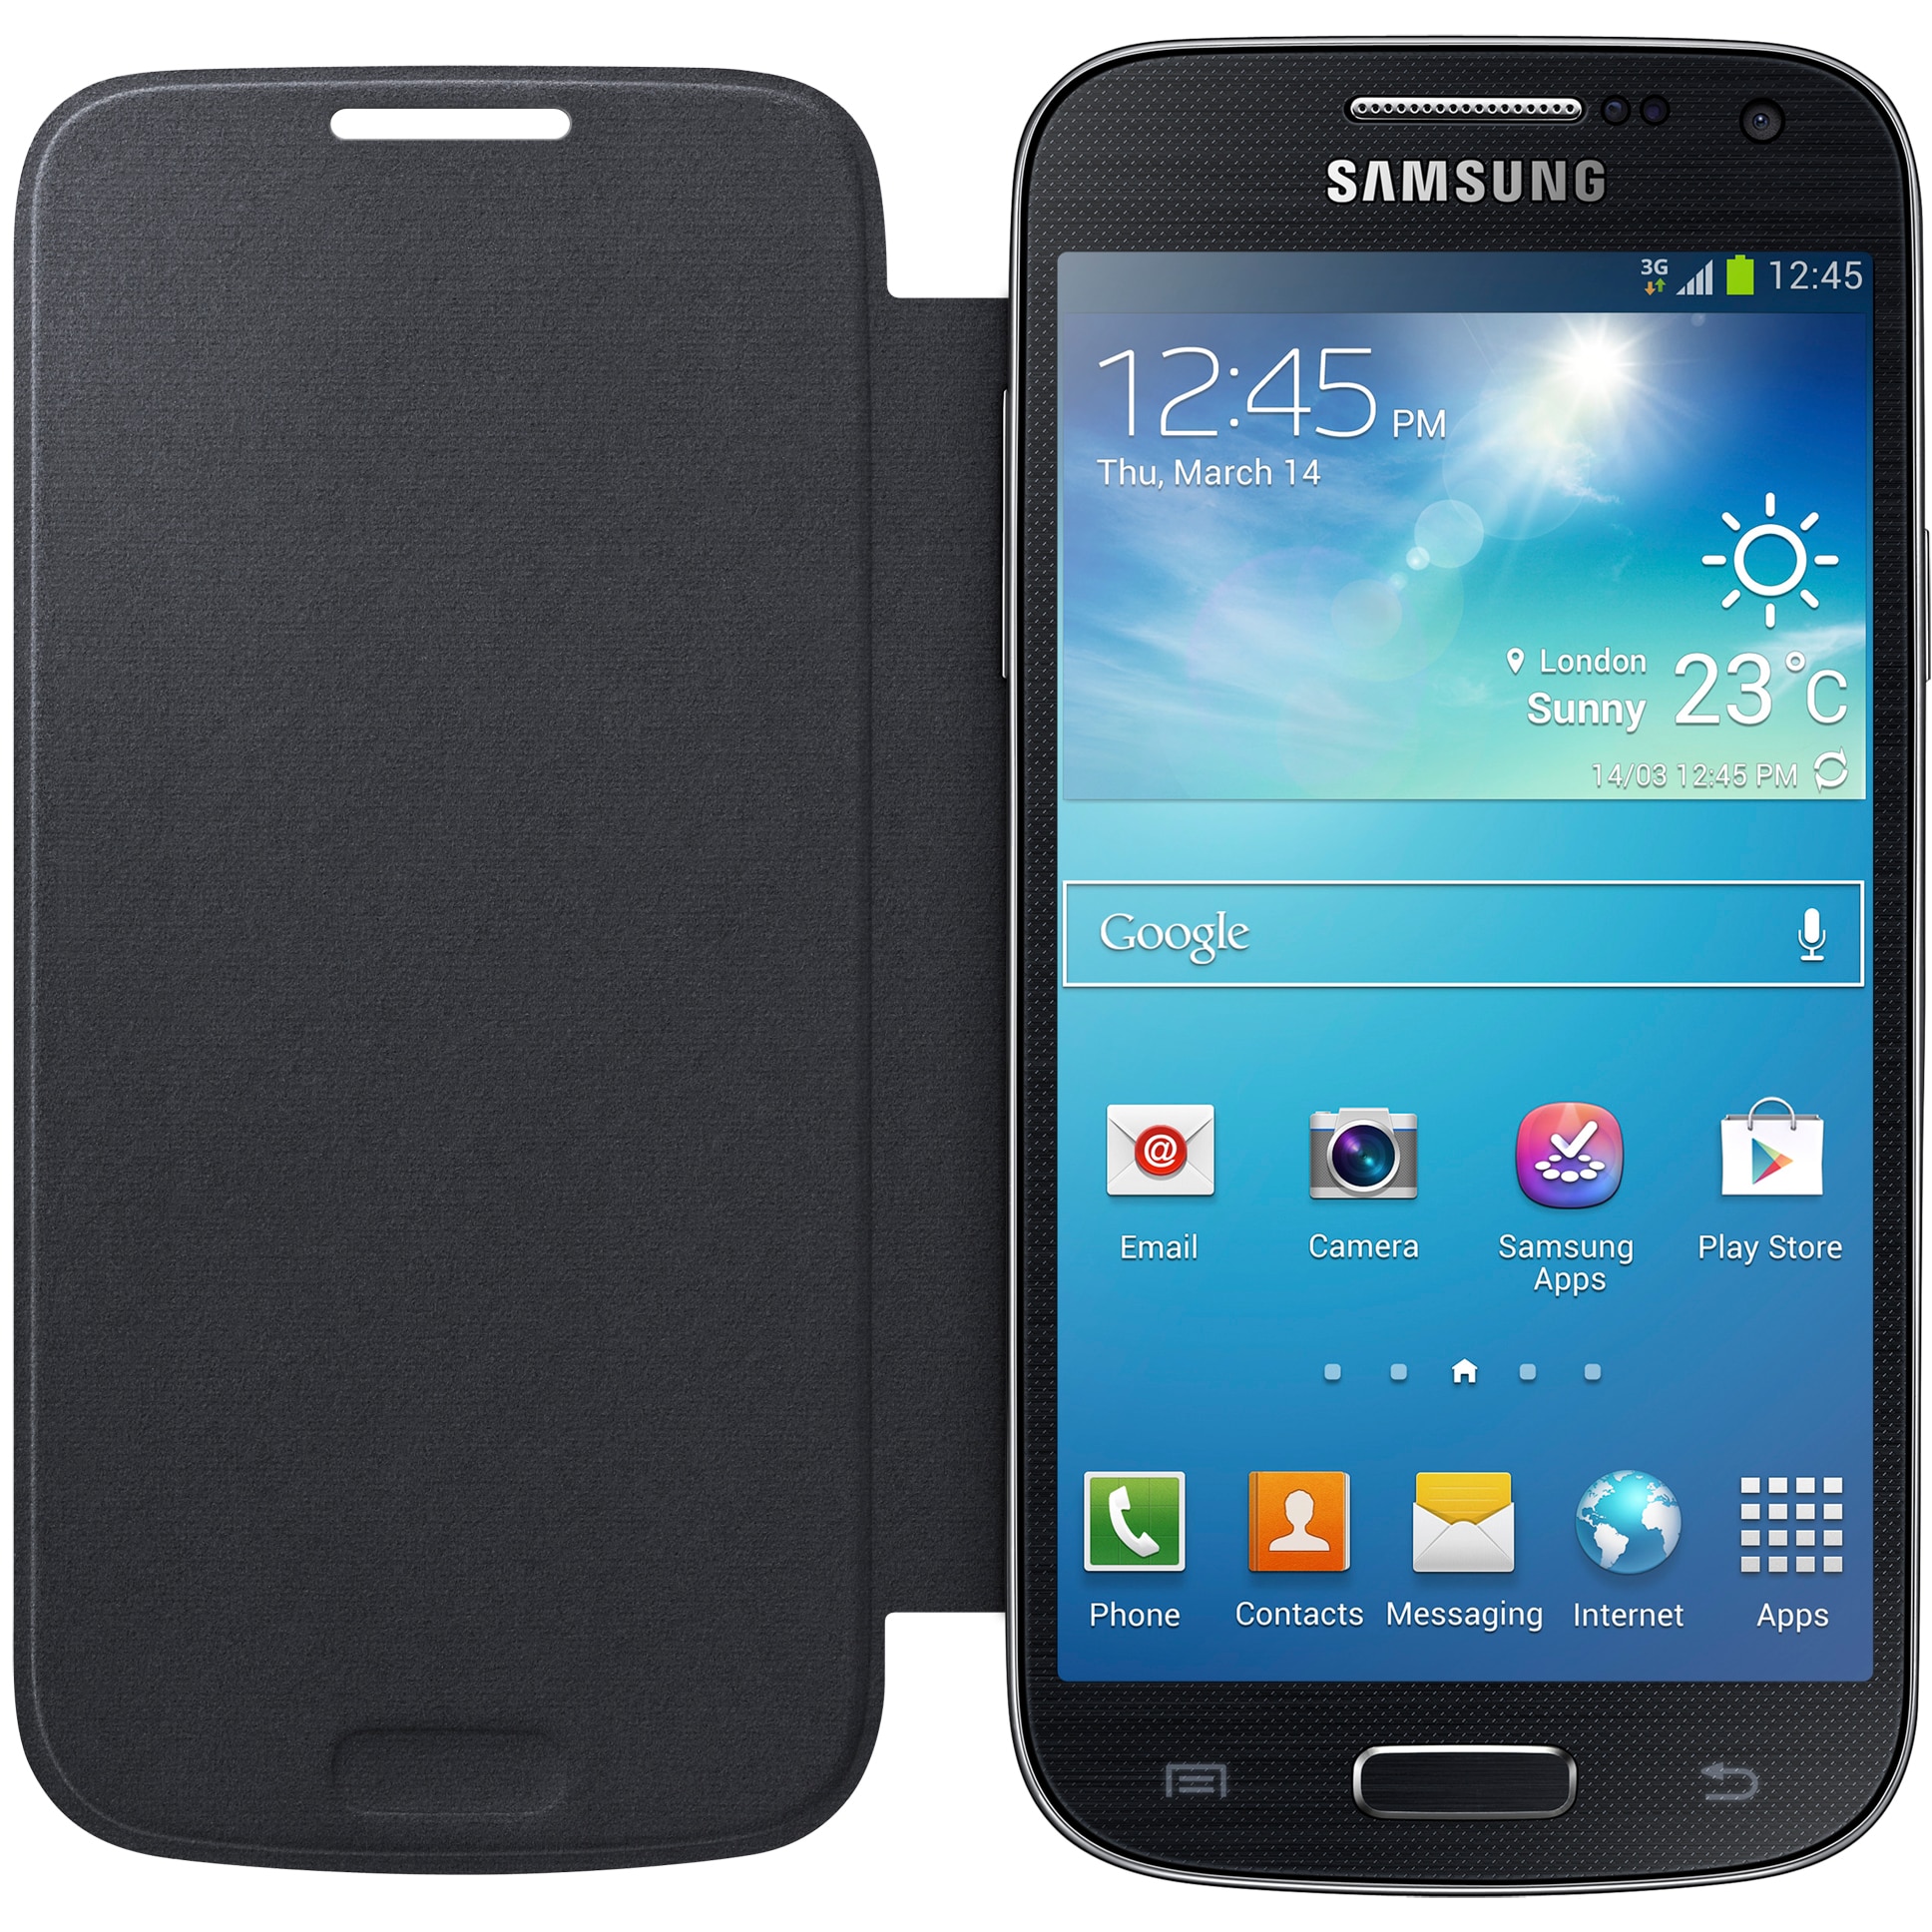 Gt s4 mini. Samsung s4 Mini. Samsung i9190 Galaxy s4 Mini. Samsung Galaxy s4 Mini gt-i9190. Samsung Galaxy 4 Mini gt i9190.